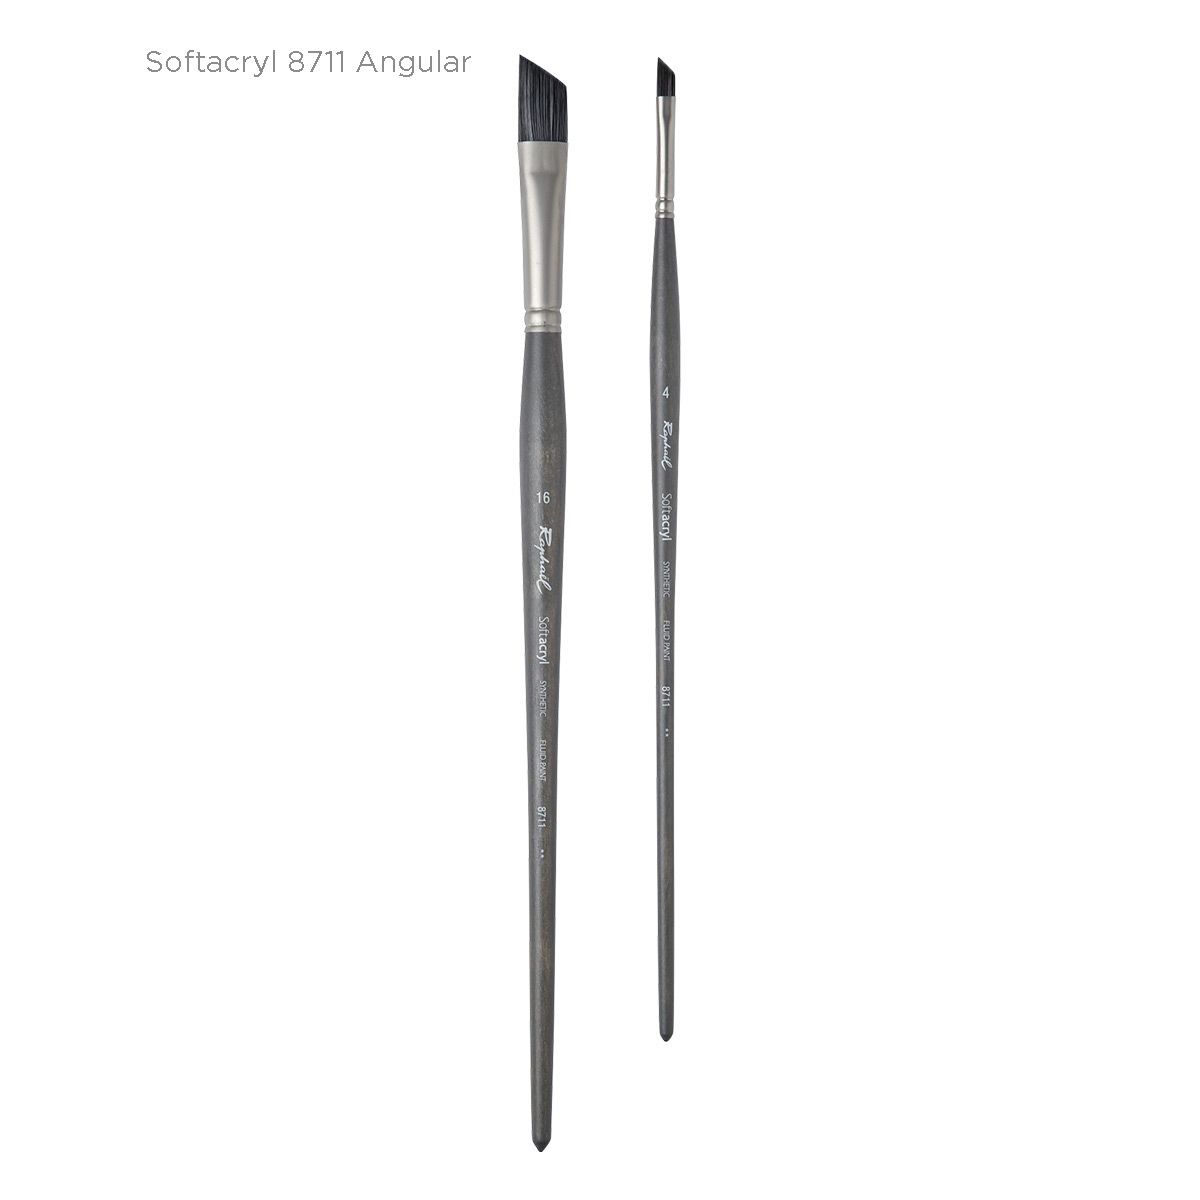 SoftAcryl 8711 Angular Brushes